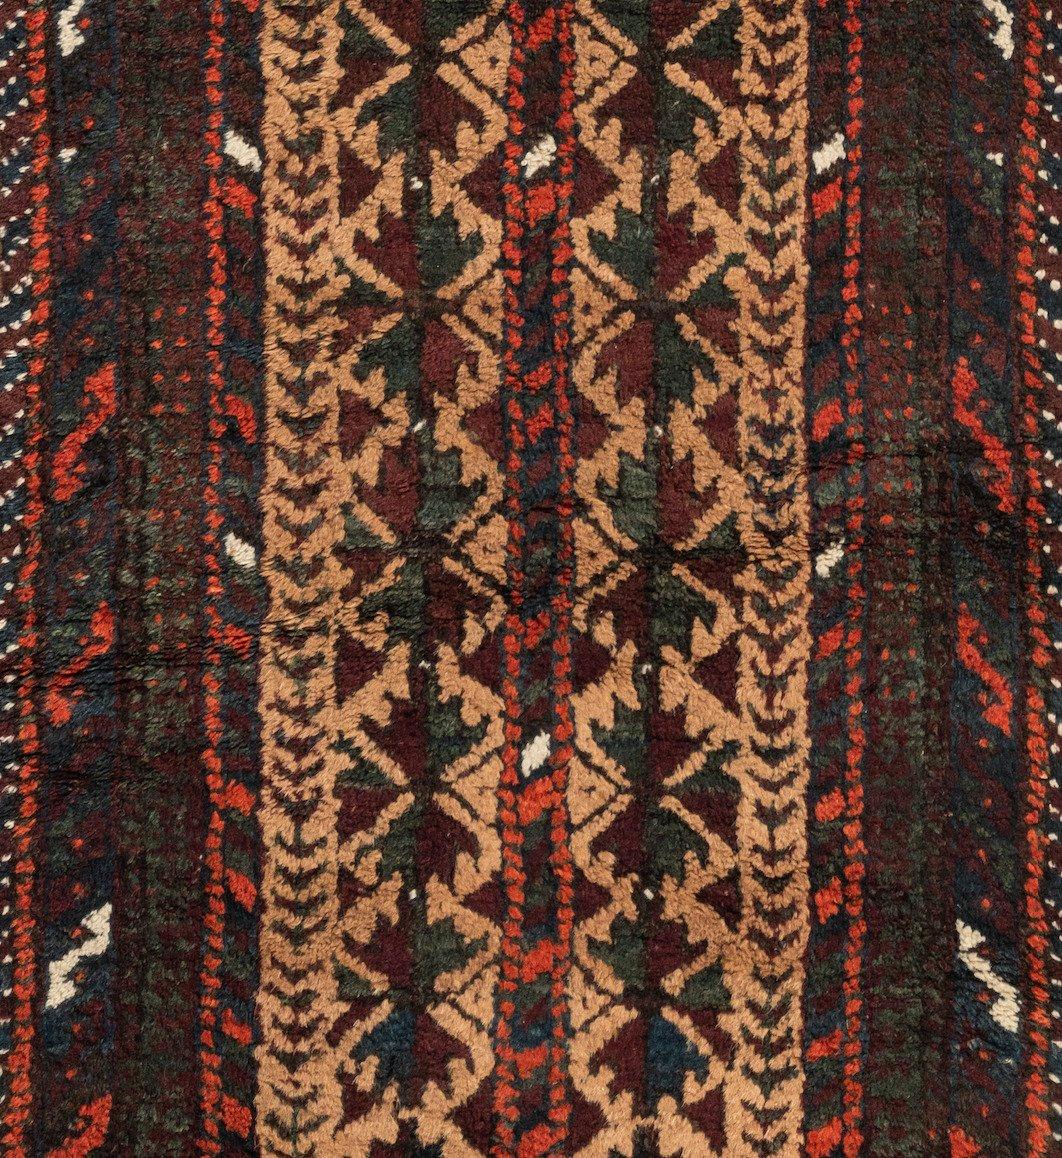 Belutsch-Teppiche sind handgefertigte Teppiche, die ursprünglich von Belutsch-Nomaden hergestellt wurden, die nahe der Grenze zwischen Iran, Pakistan und Afghanistan leben. Die Teppiche sind oft klein und mit lebhaften Mustern versehen, und